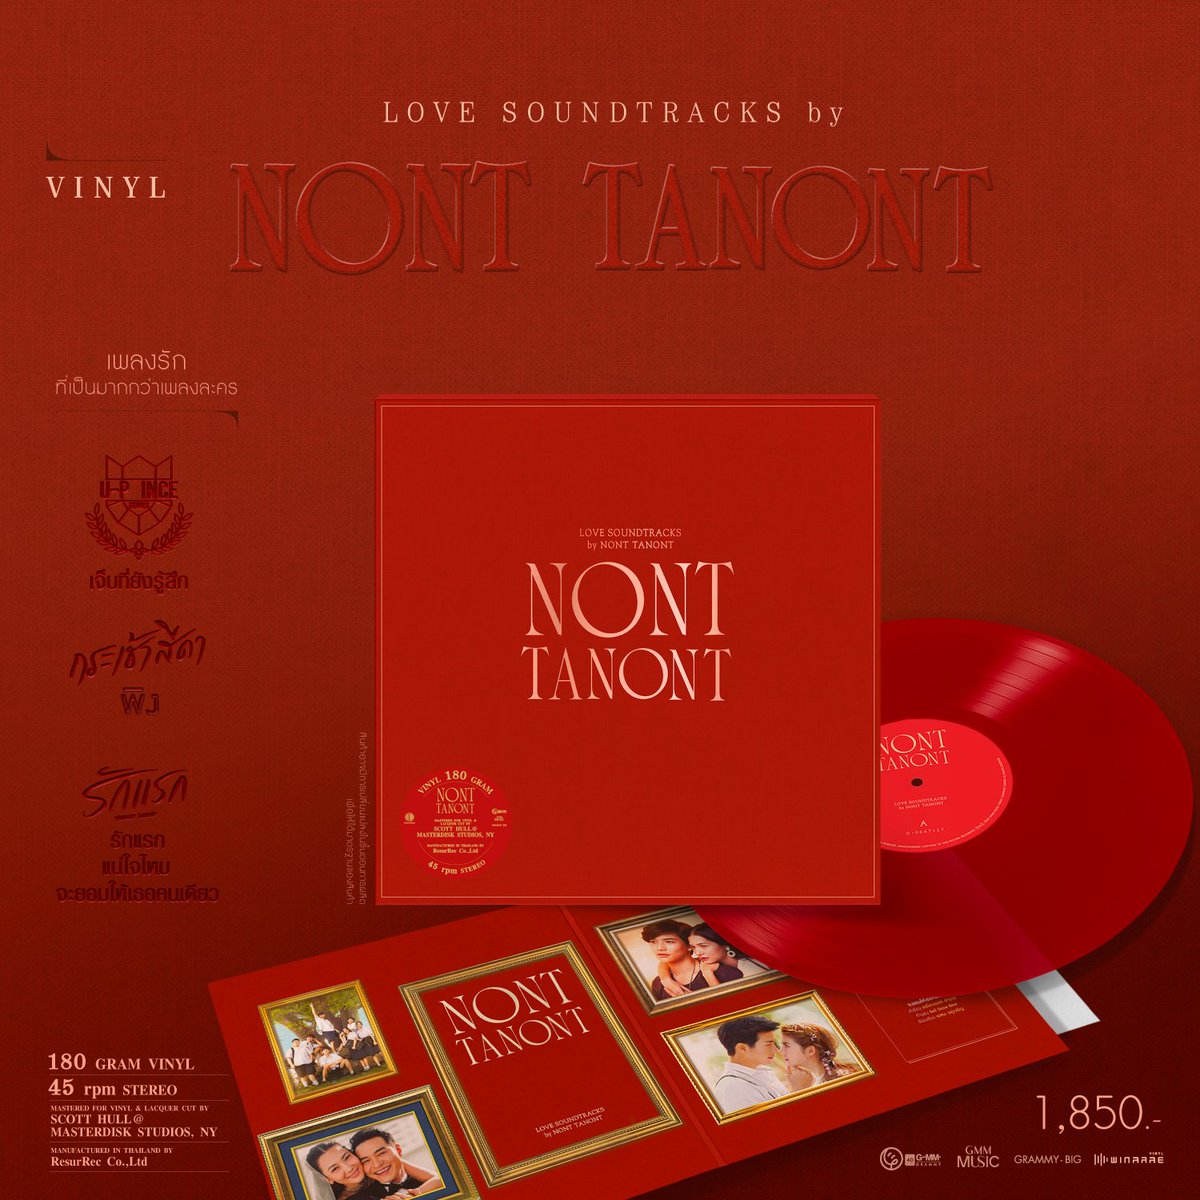 แผ่นเสียง Love Soundtracks by NONT TANONT

*Made To Order 

🛒 Pre-Order ตั้งแต่ 17 - 25 พ.ค. 67

📦 จัดส่งภายในเดือน ก.ค. 67

ราคา 1,850 บาท
+จัดส่ง EMS 100

#woodhouserecords #woodhousepreorder
#แผ่นเสียง #พรีแผ่นเสียง #แผ่นไวนิล #ไวนิล #พรีไวนิล
#Vinyl 
#GMMMusic #GMMGrammy